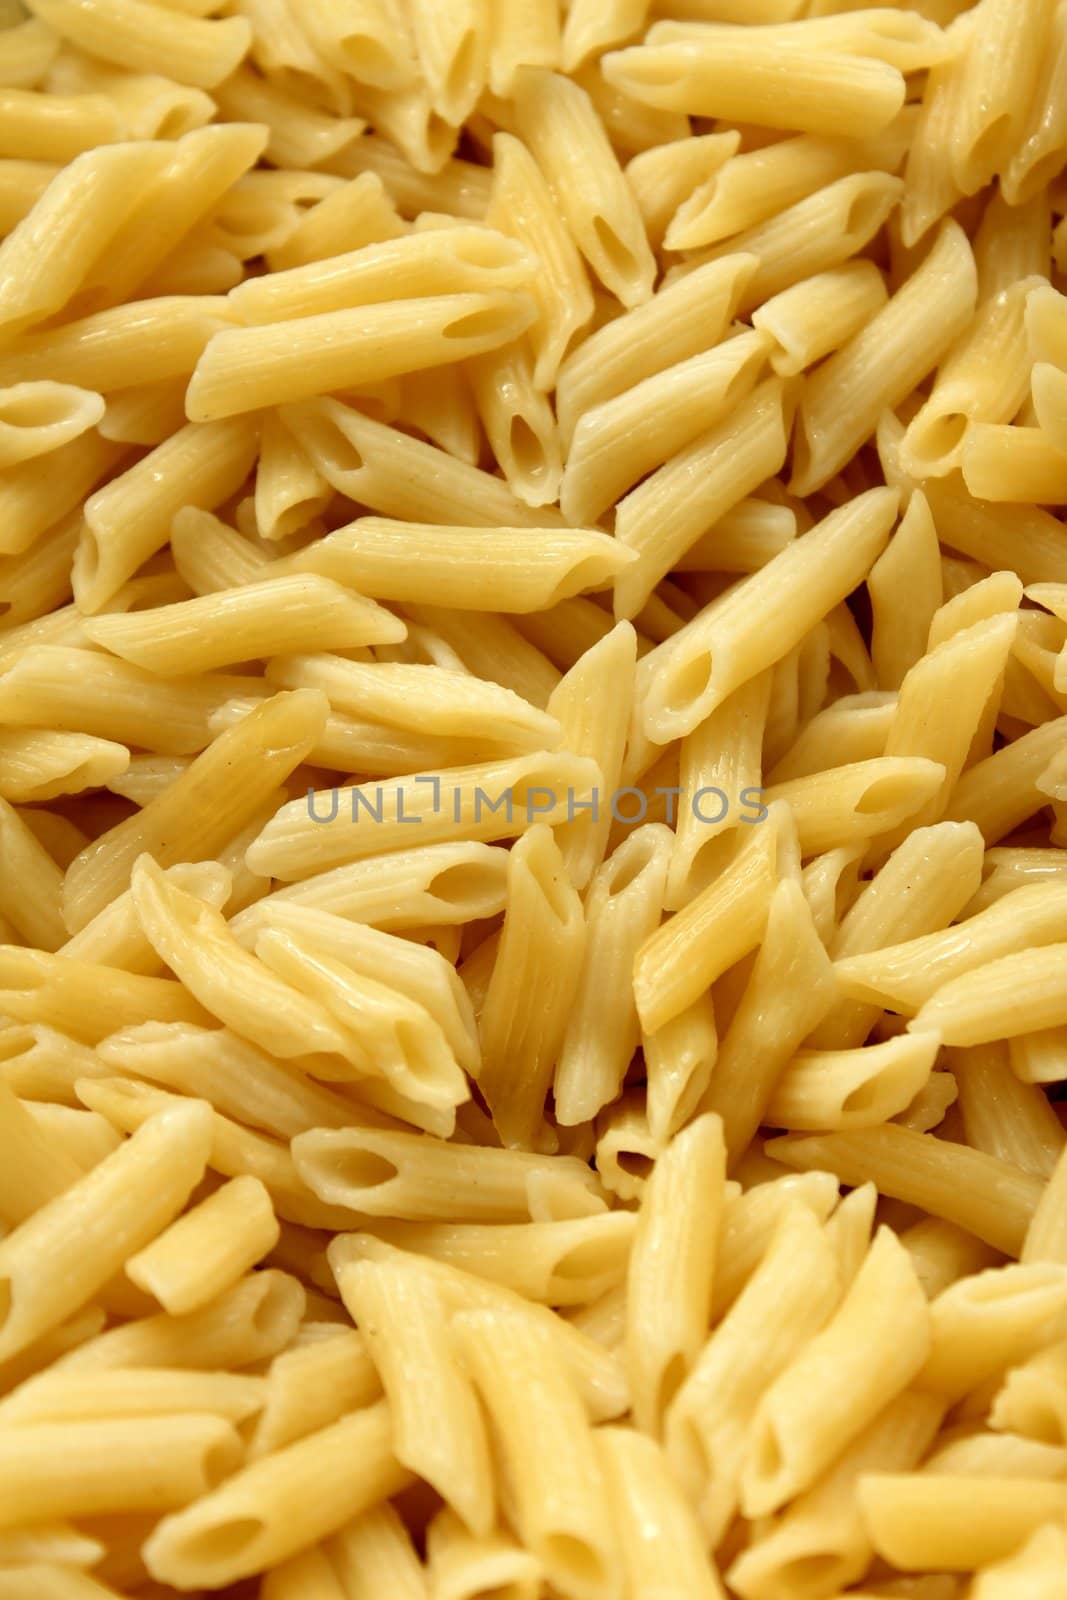 macaroni noodles background by Teka77